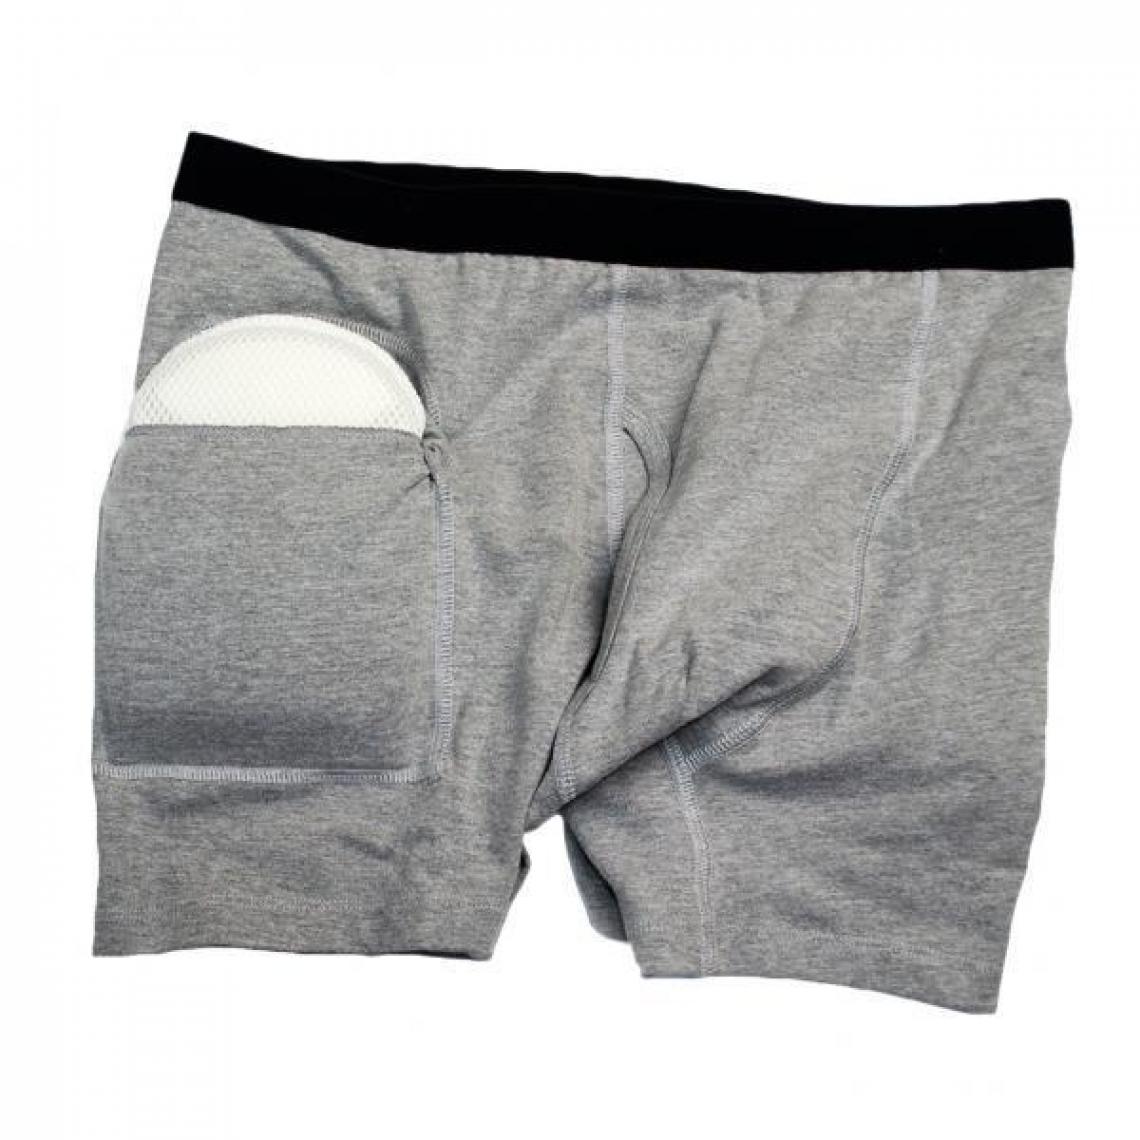 marque generique - Pantalon de protection contre les fractures de la hanche - Autre appareil de mesure